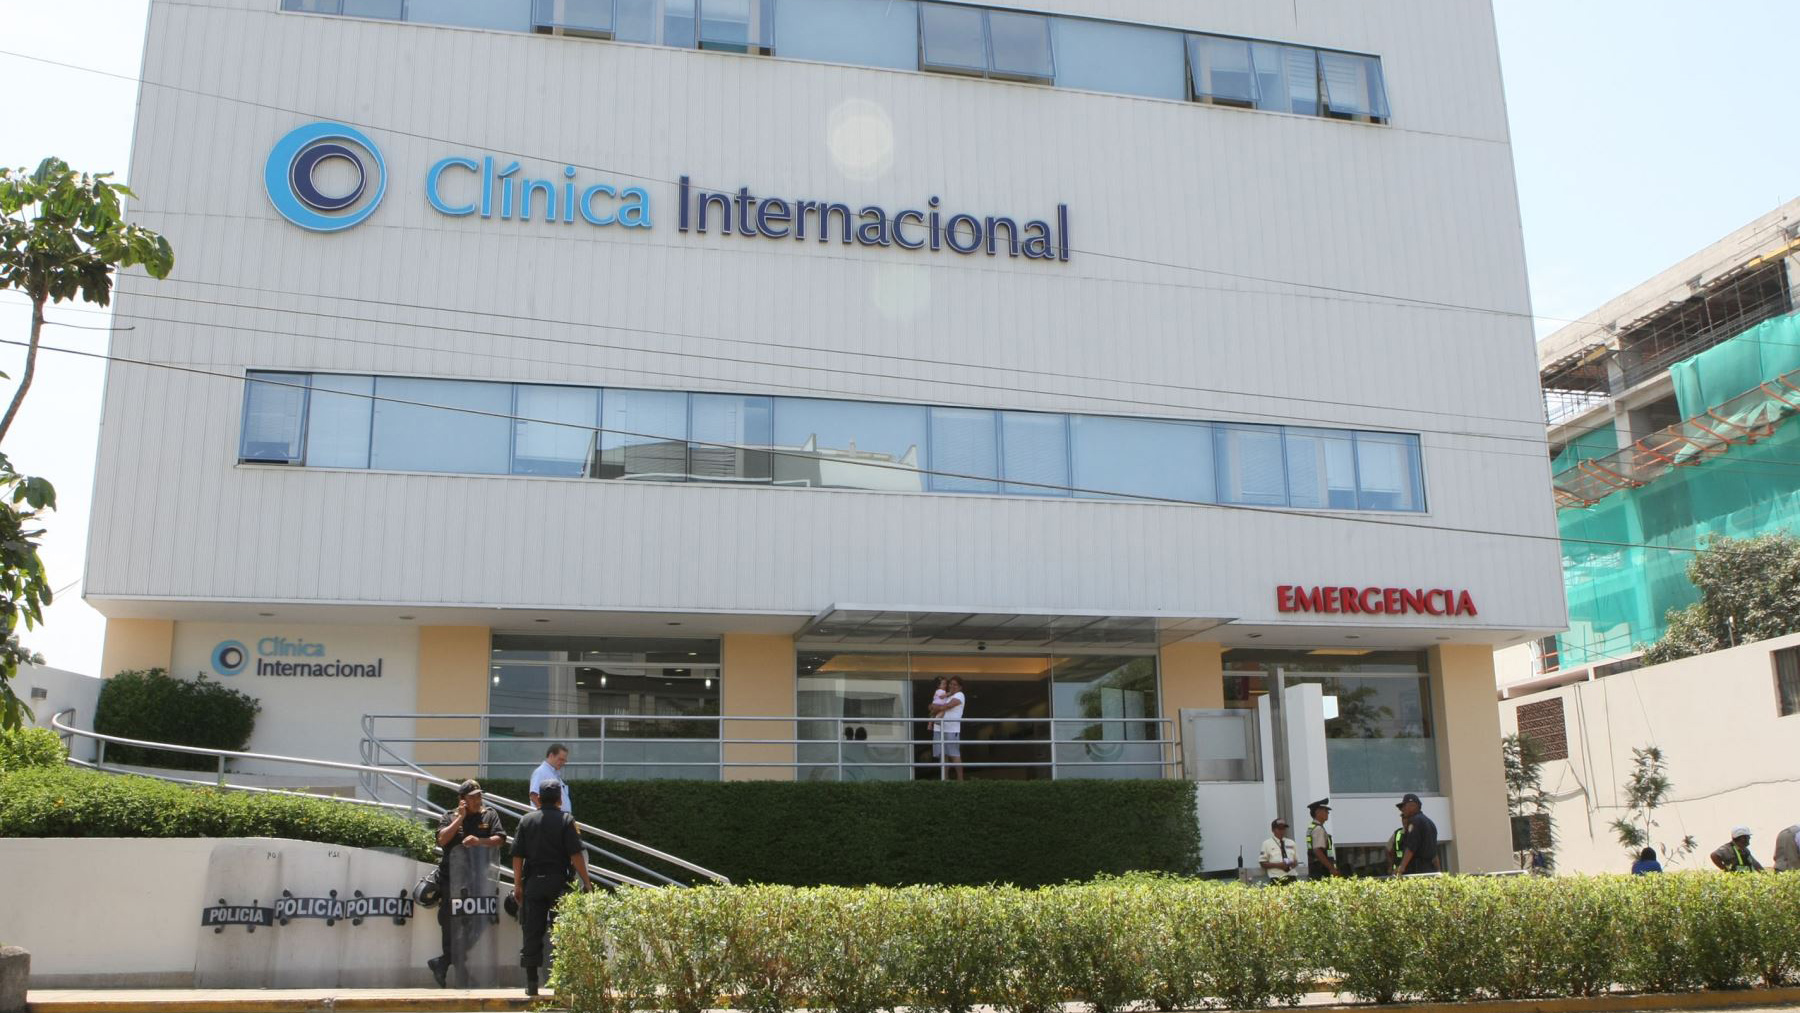 Clínica Internacional: “Más que una clínica, somos una red de servicios de salud”